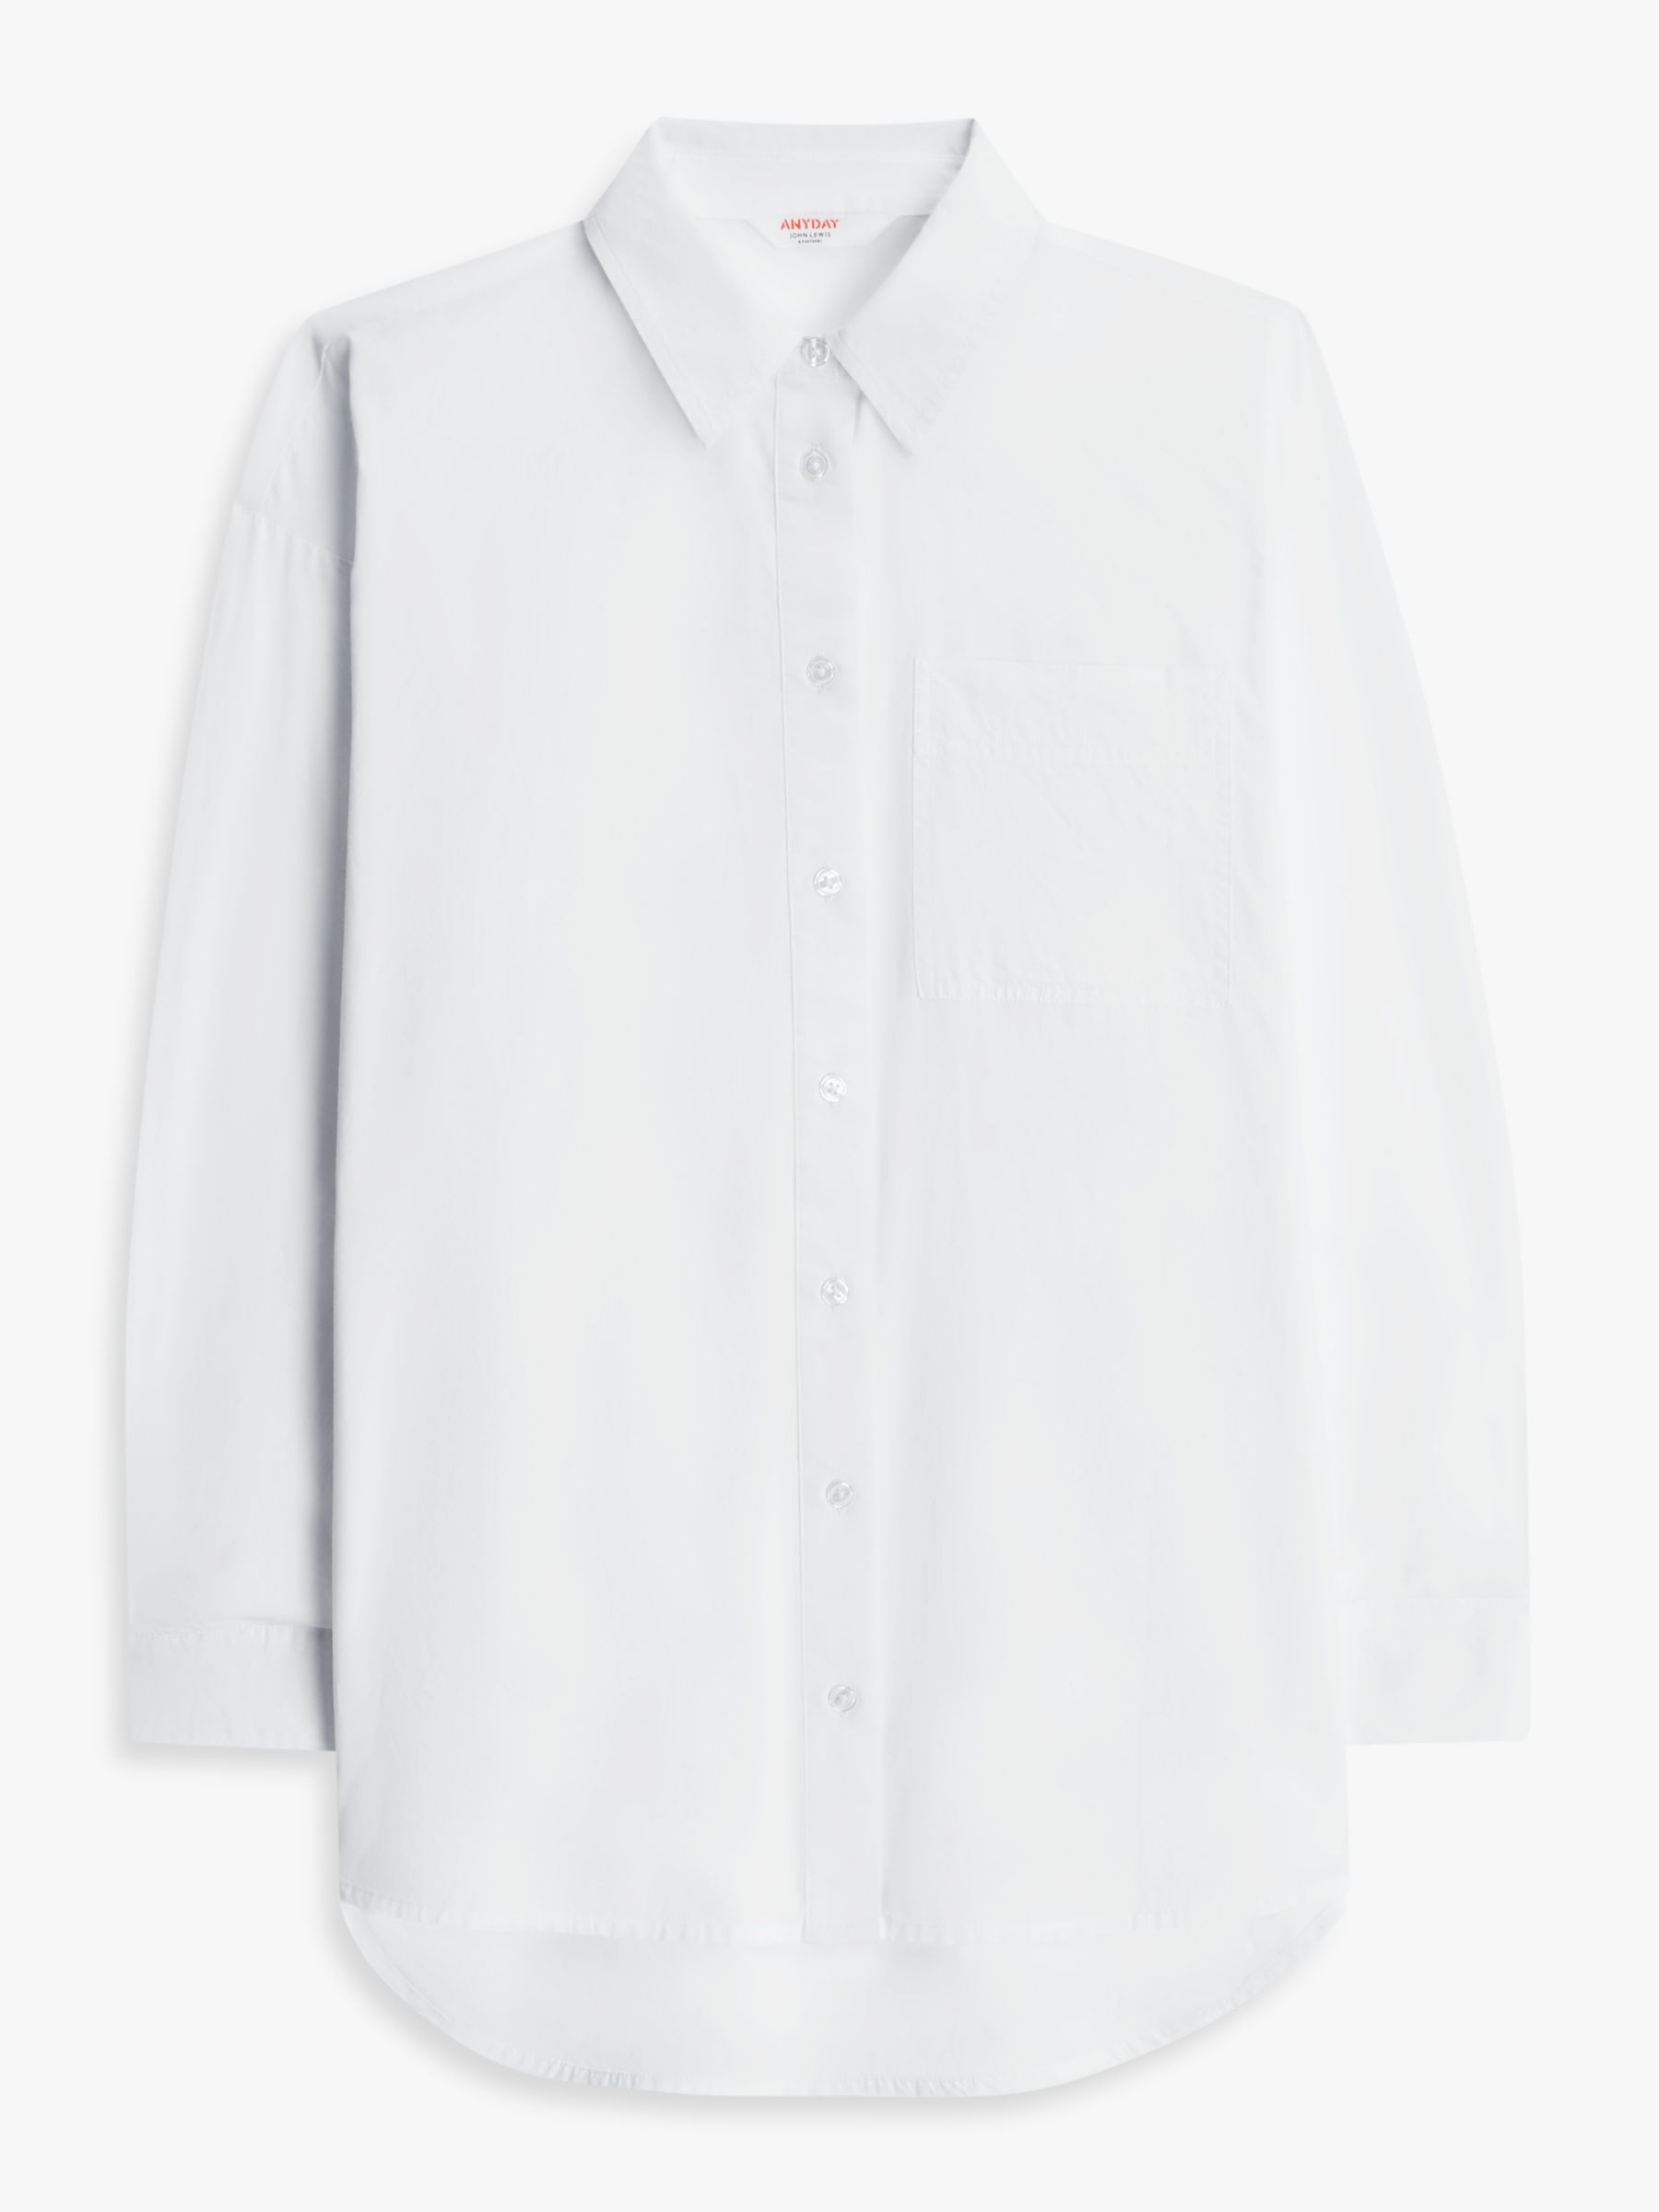 John Lewis ANYDAY Plain Oversized Long Sleeve Shirt, White, 6